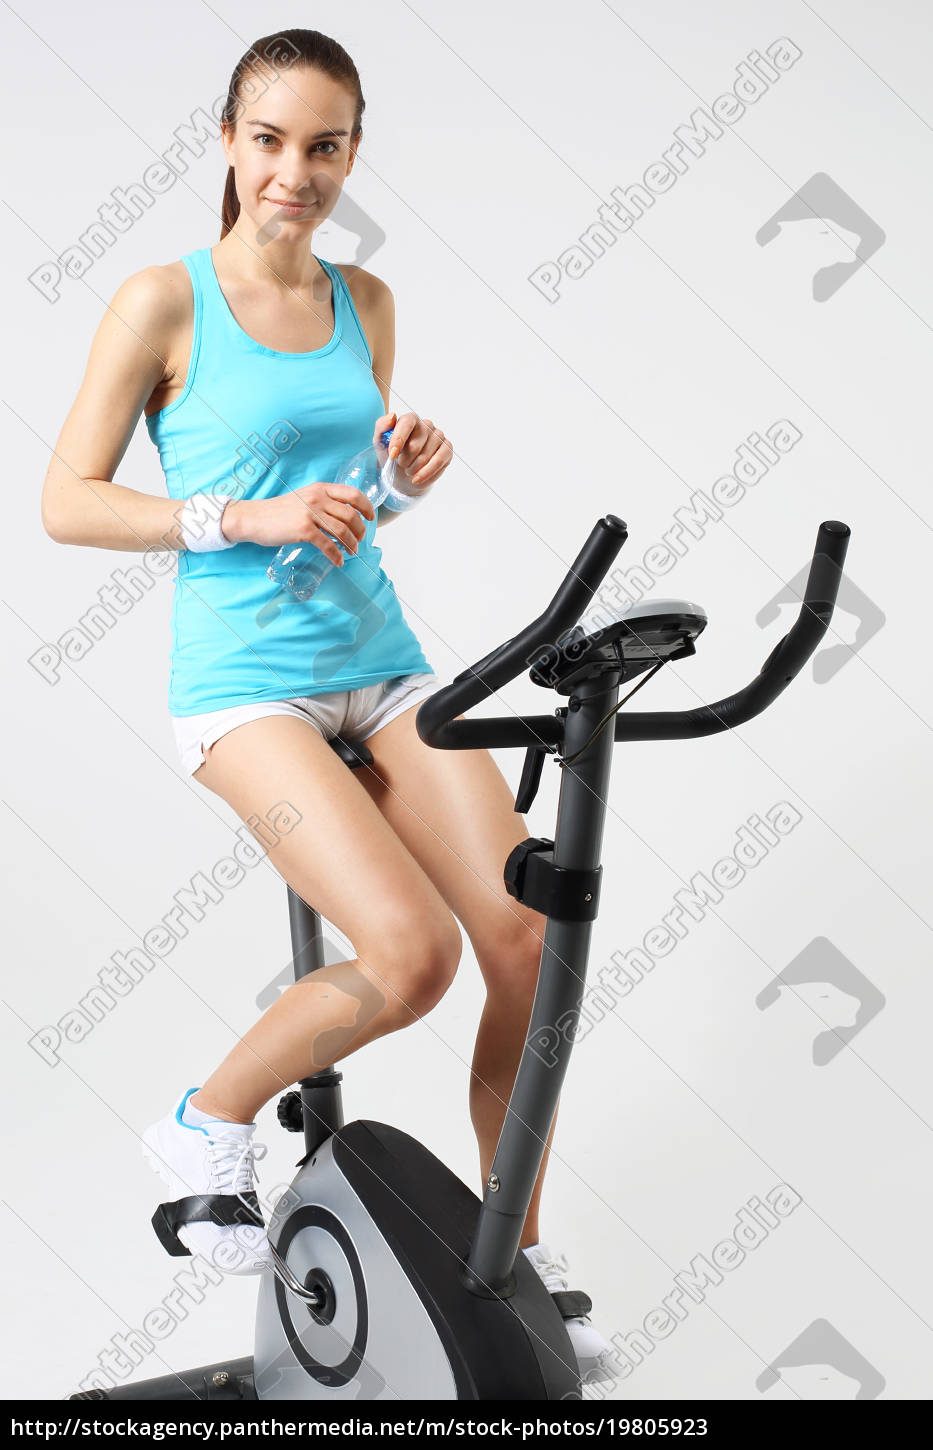 exercise bike effective